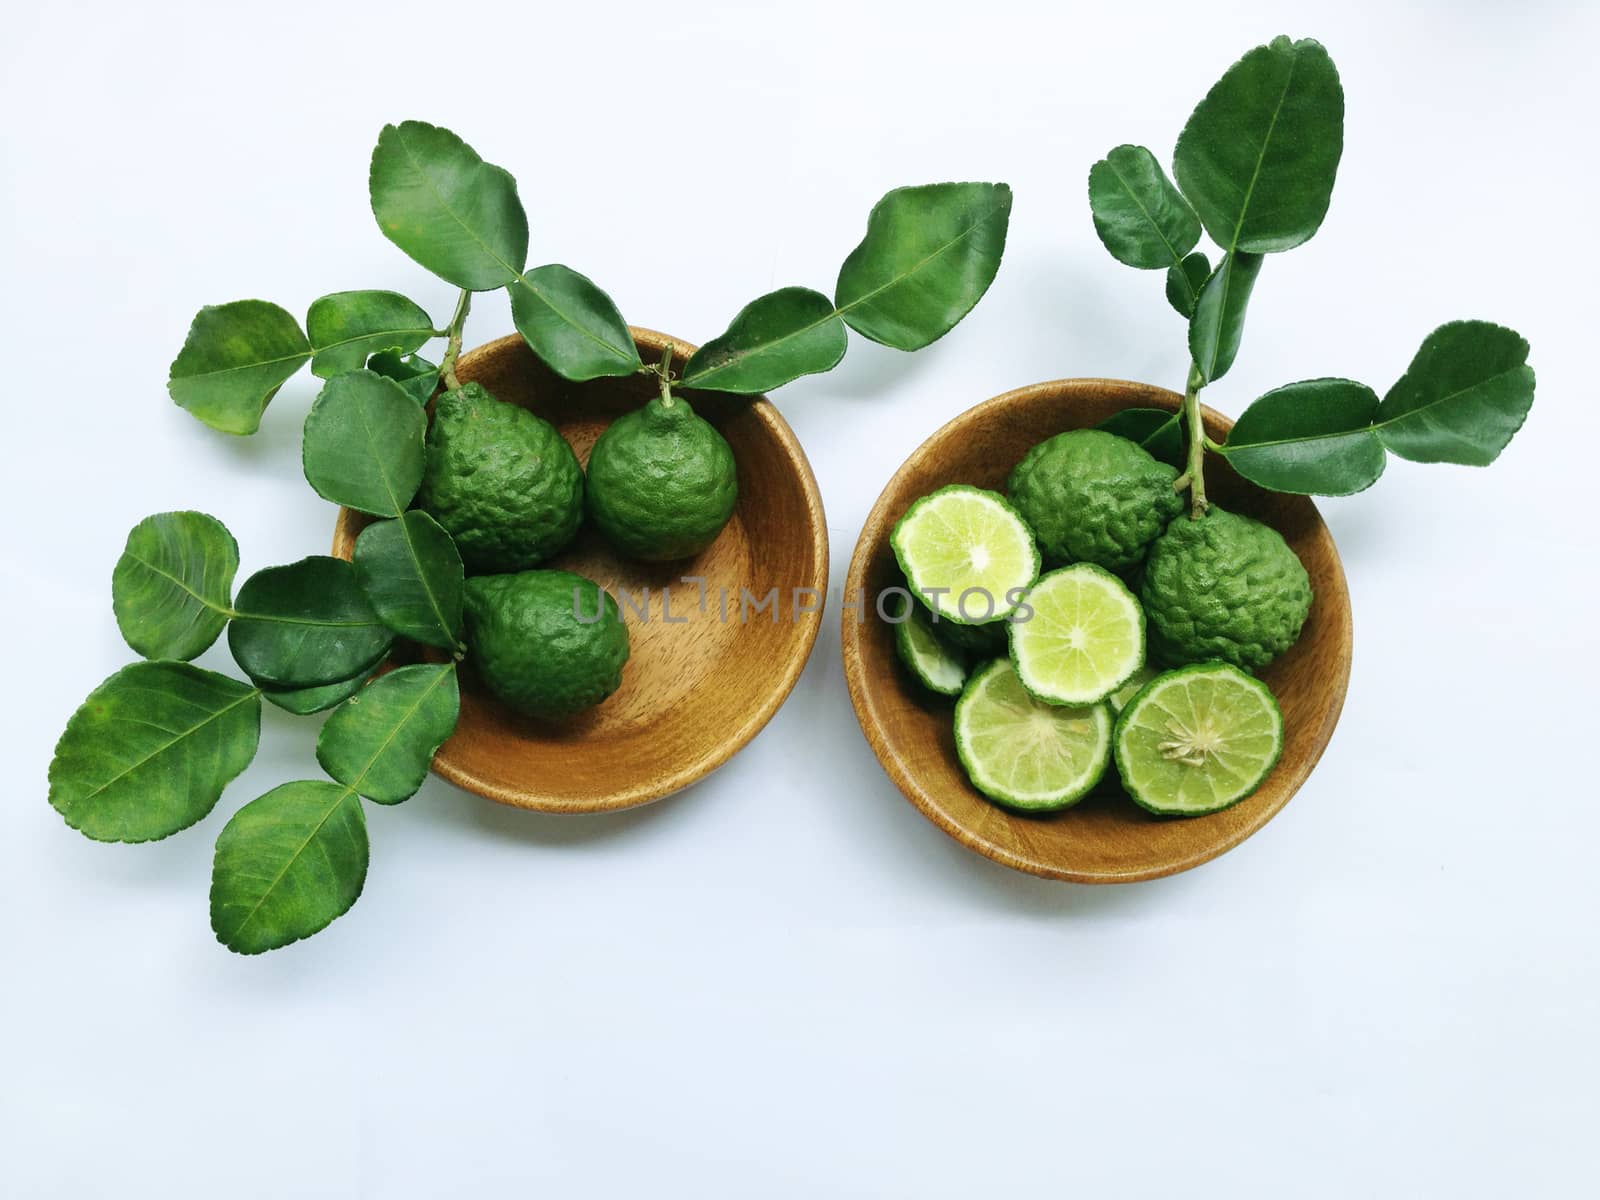 Kaffir Lime or Bergamot in wooden bowl on white background